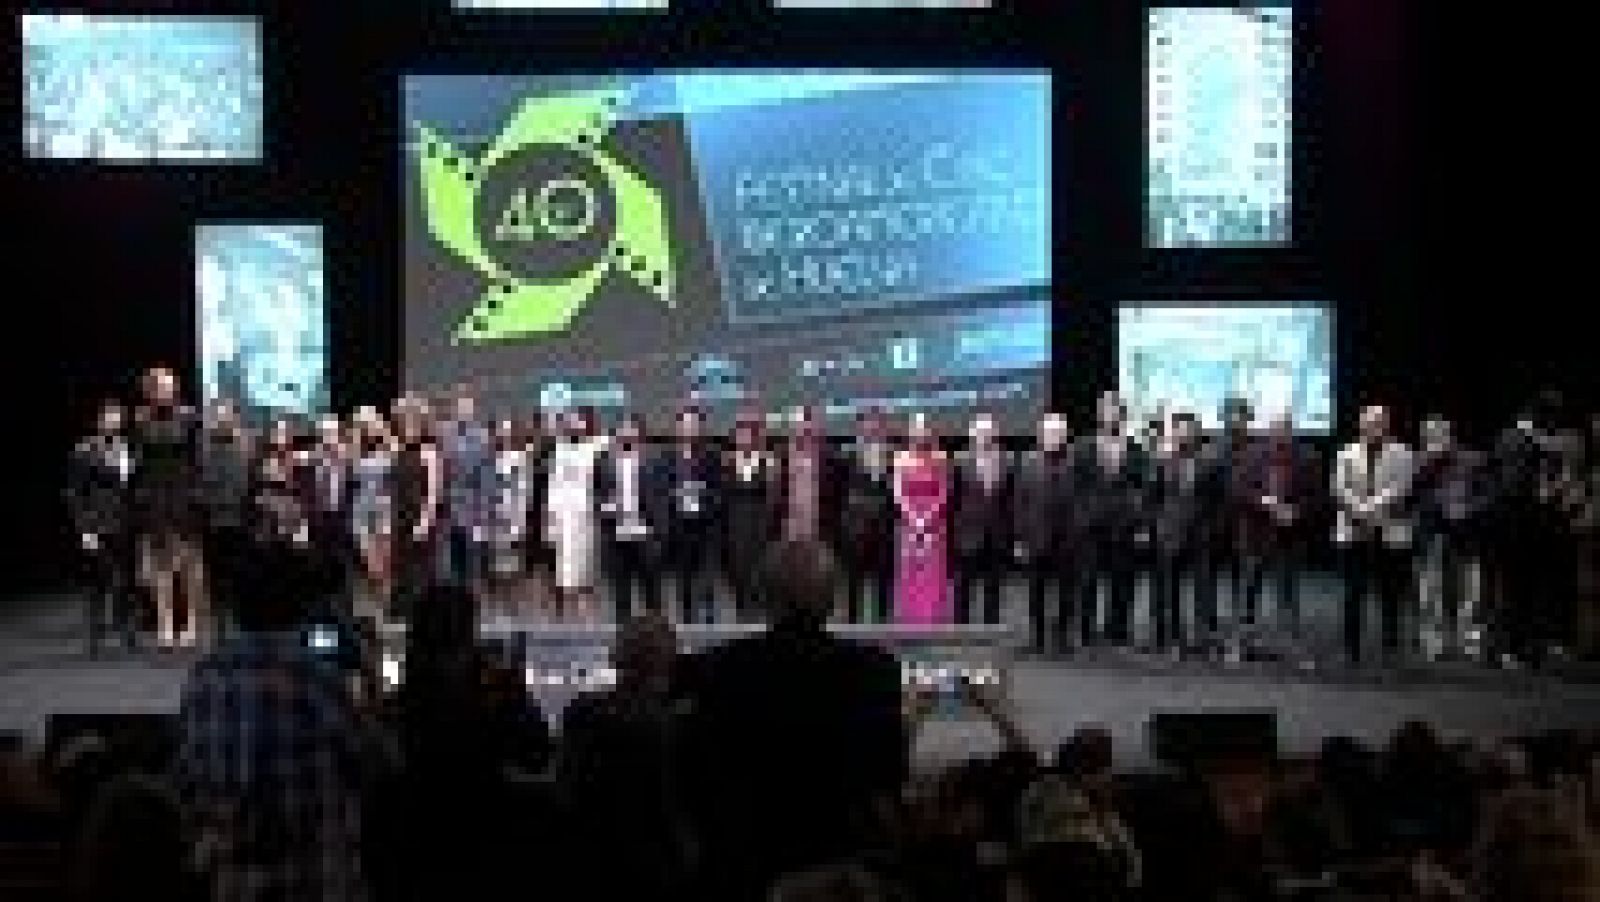 Gala de clausura del Festival de Cine de Huelva 2014 - ver ahora 